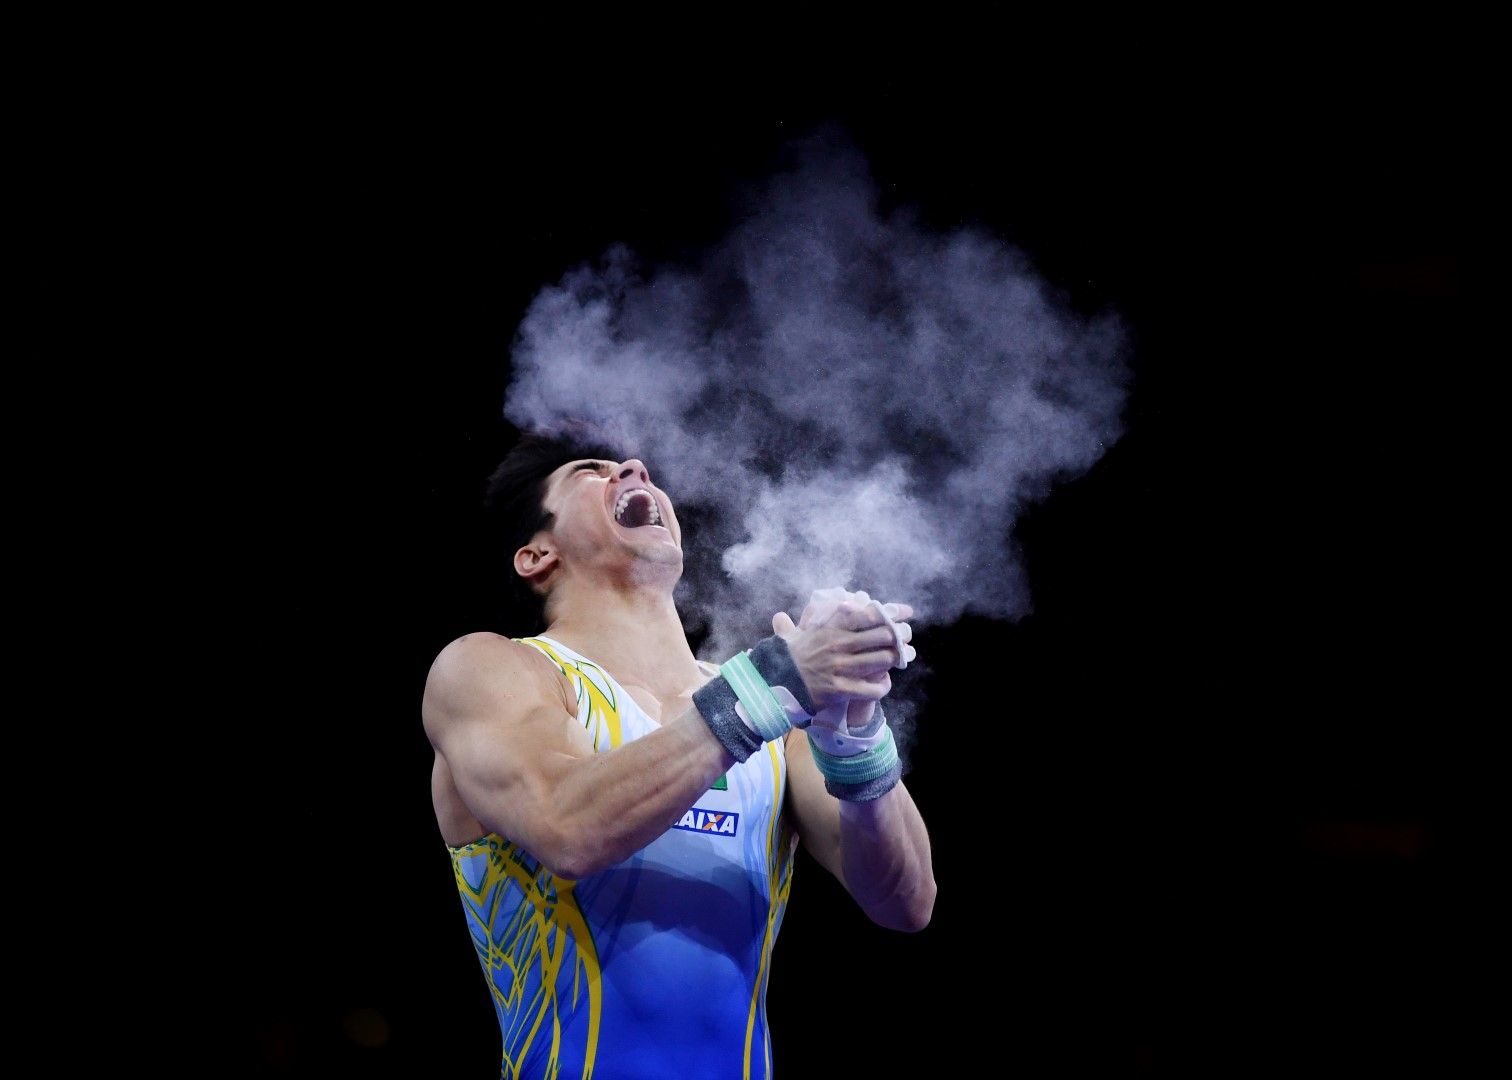  Това не е огнедишащ дракон, а Артур Мариано от Бразилия, който крещи след съчетанието си на успоредка по време на Световното първенство по спортна гимнастика.